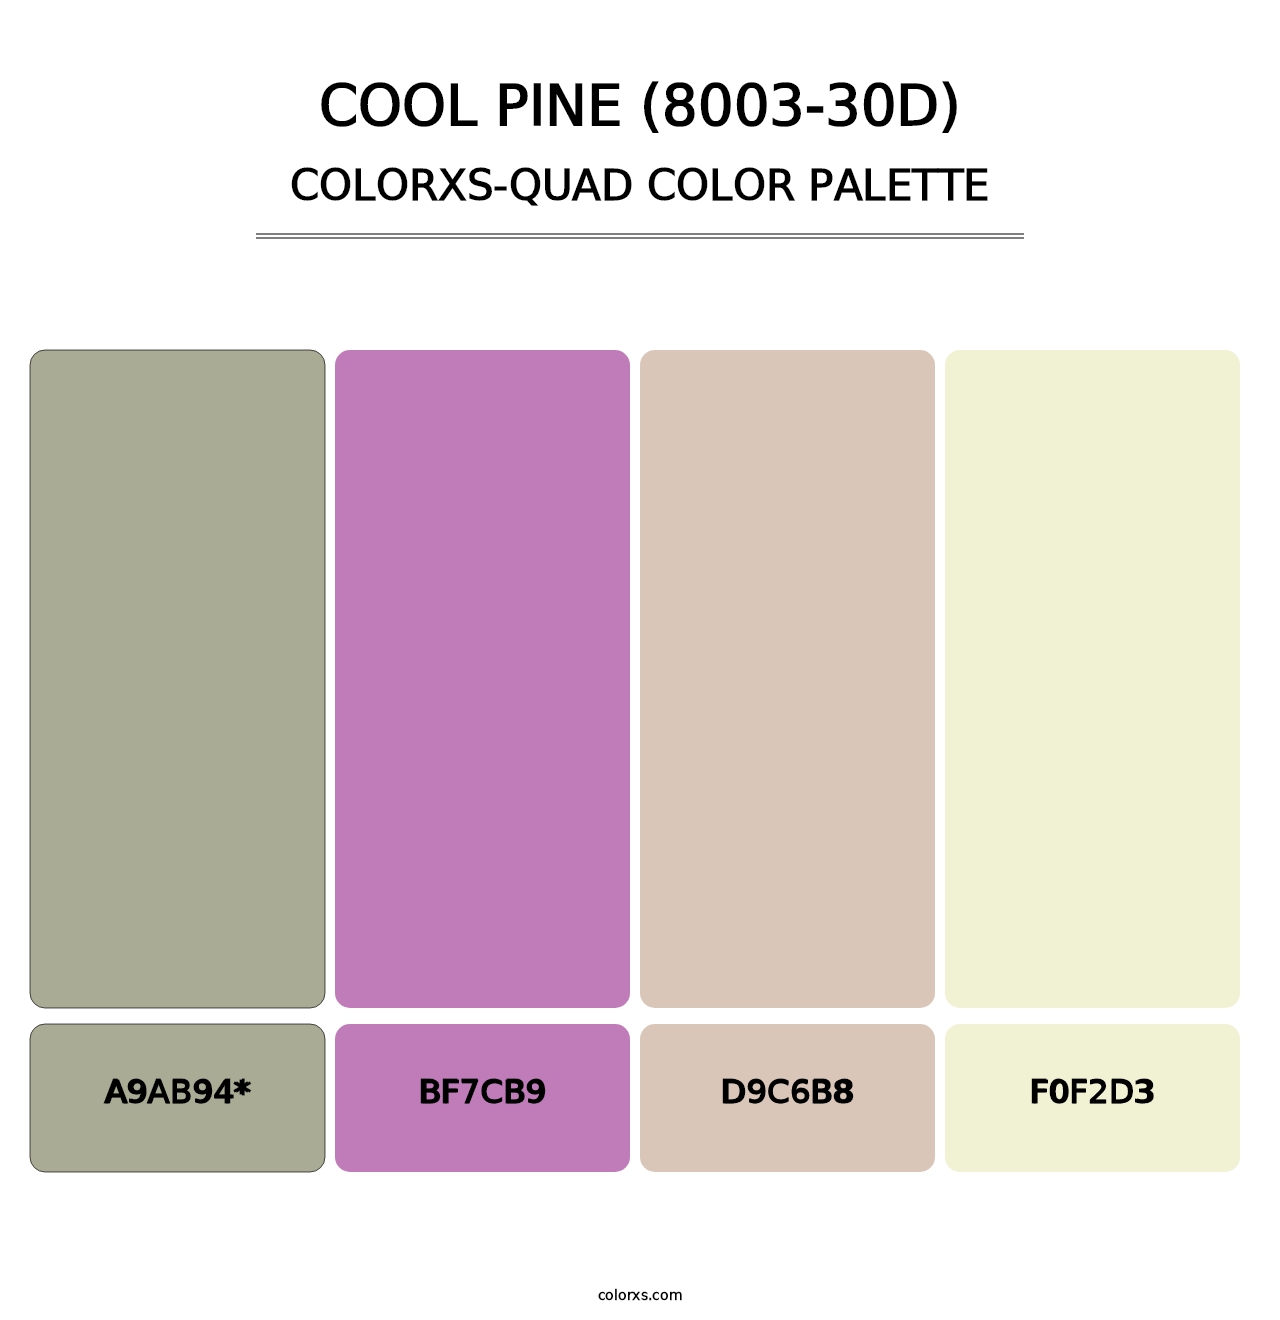 Cool Pine (8003-30D) - Colorxs Quad Palette